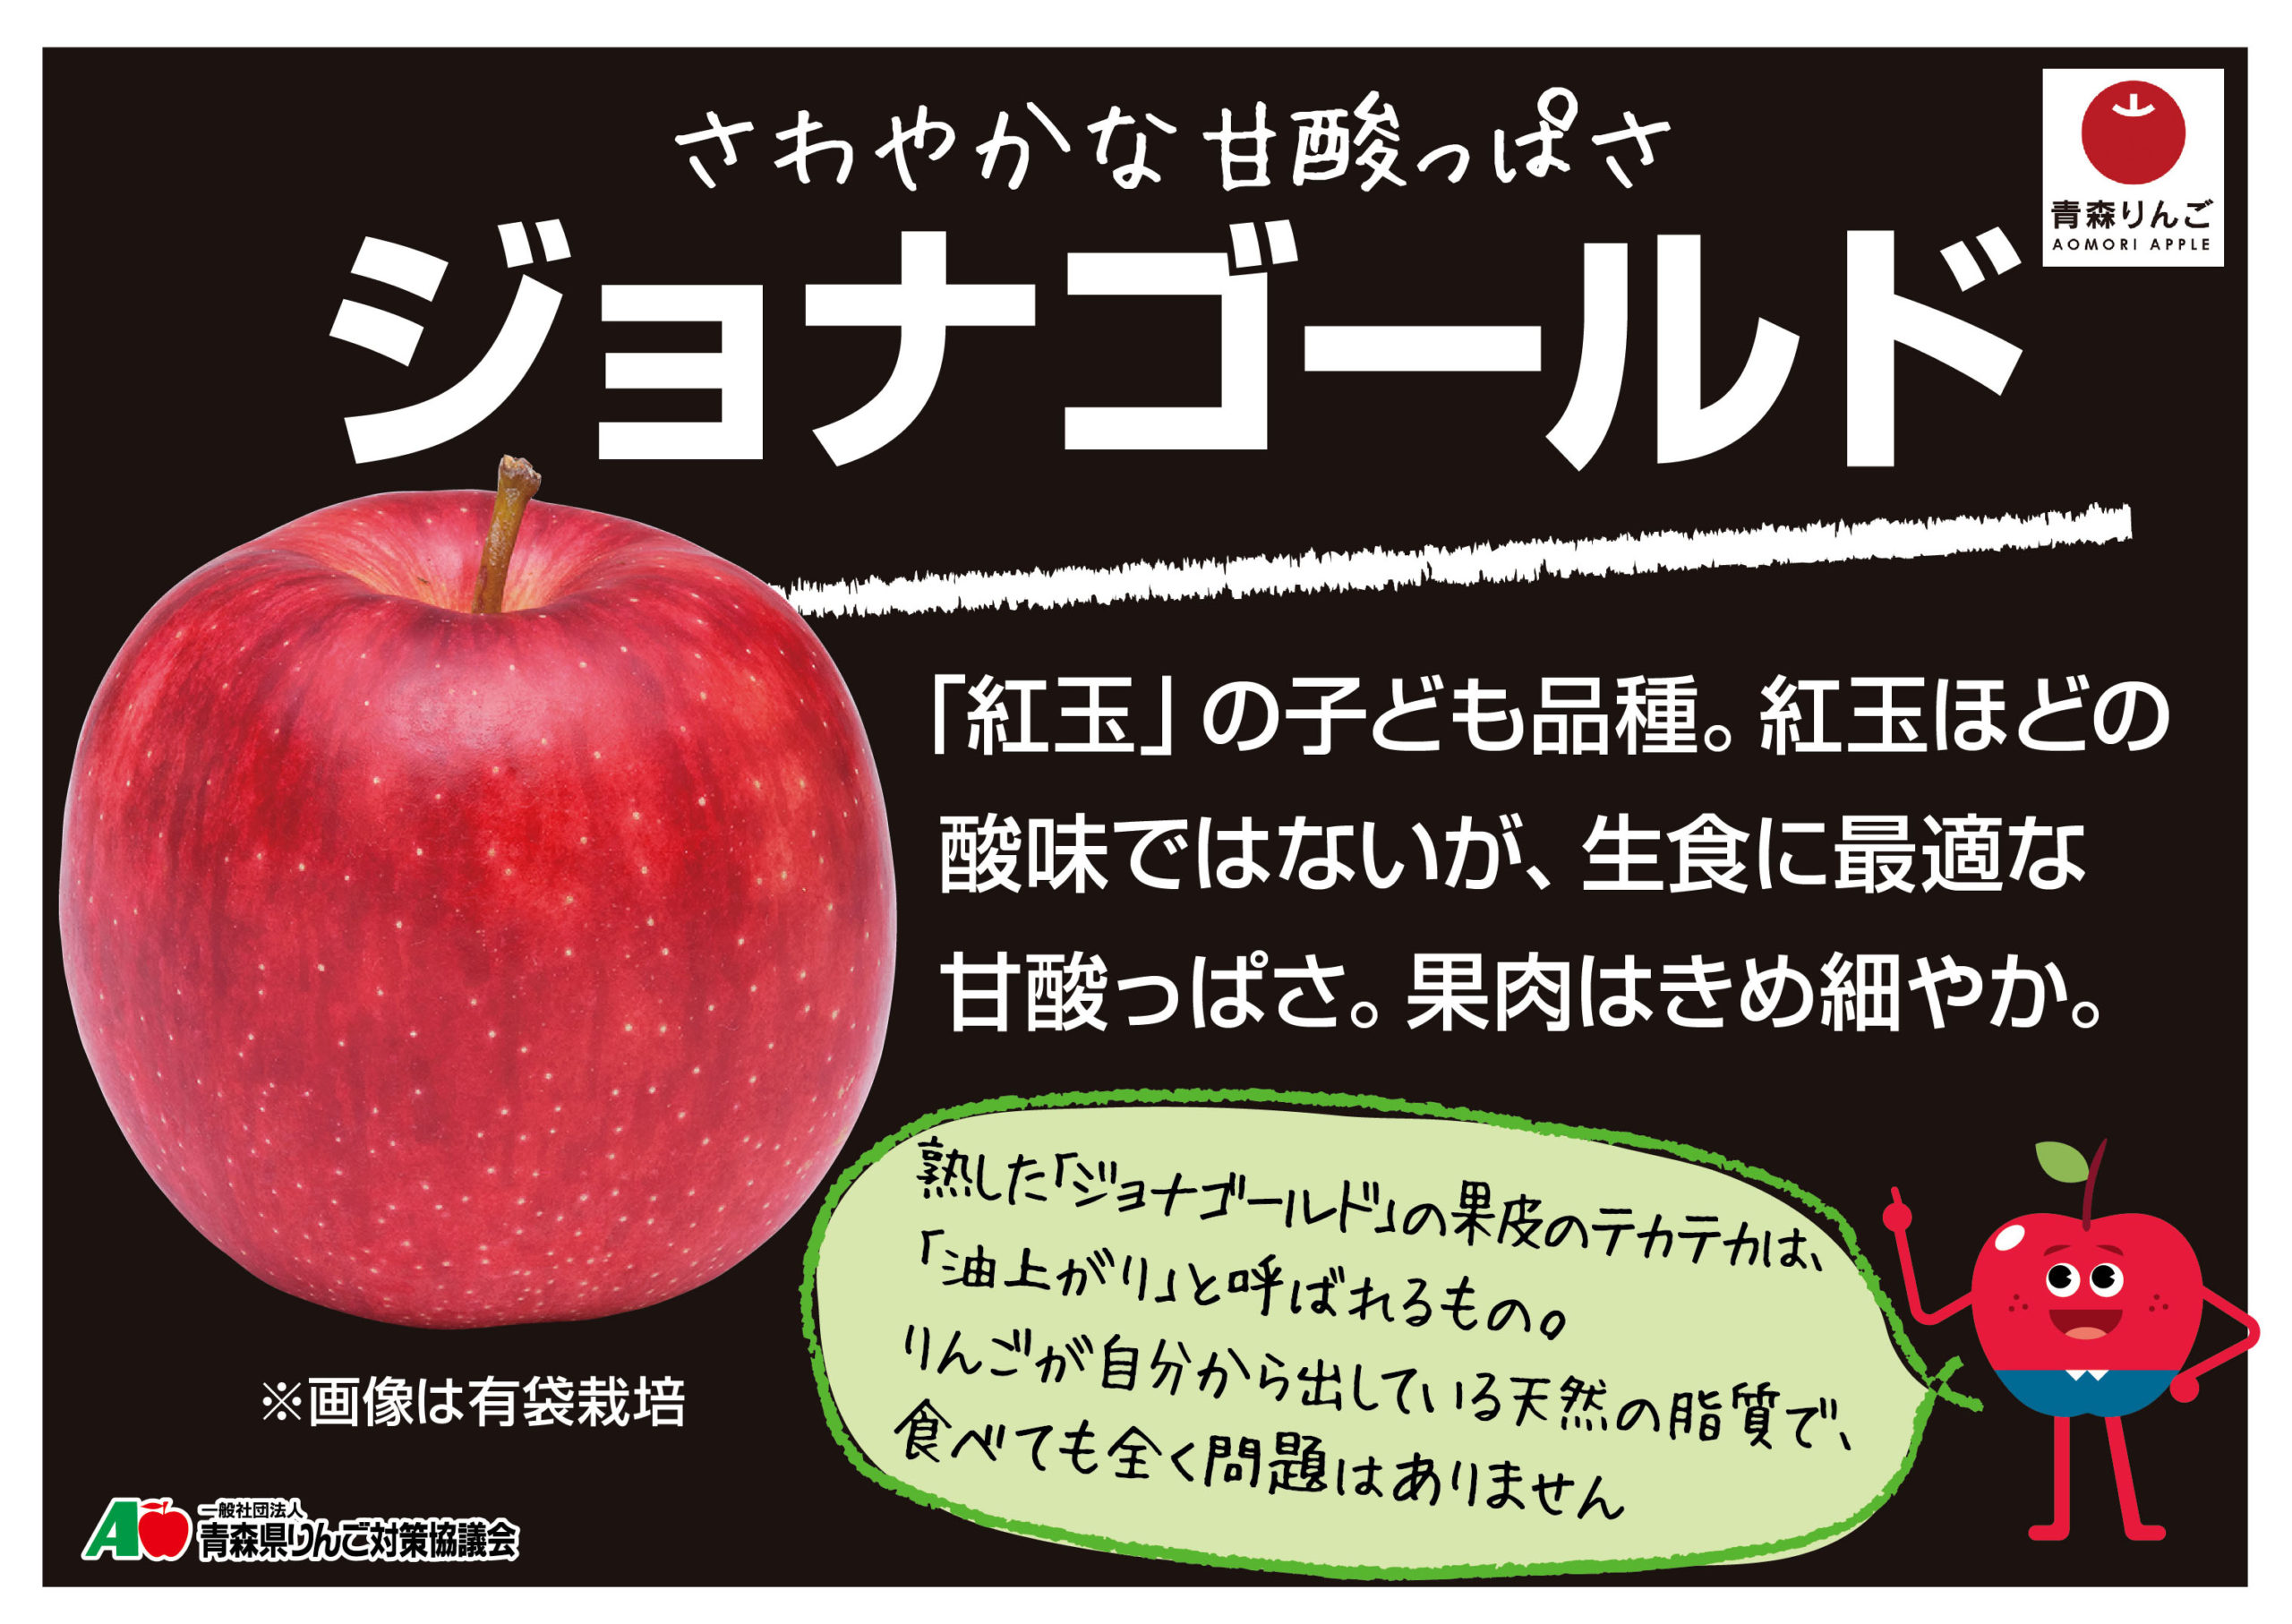 ダウンロード | 青森りんご公式サイト（一社）青森県りんご対策協議会